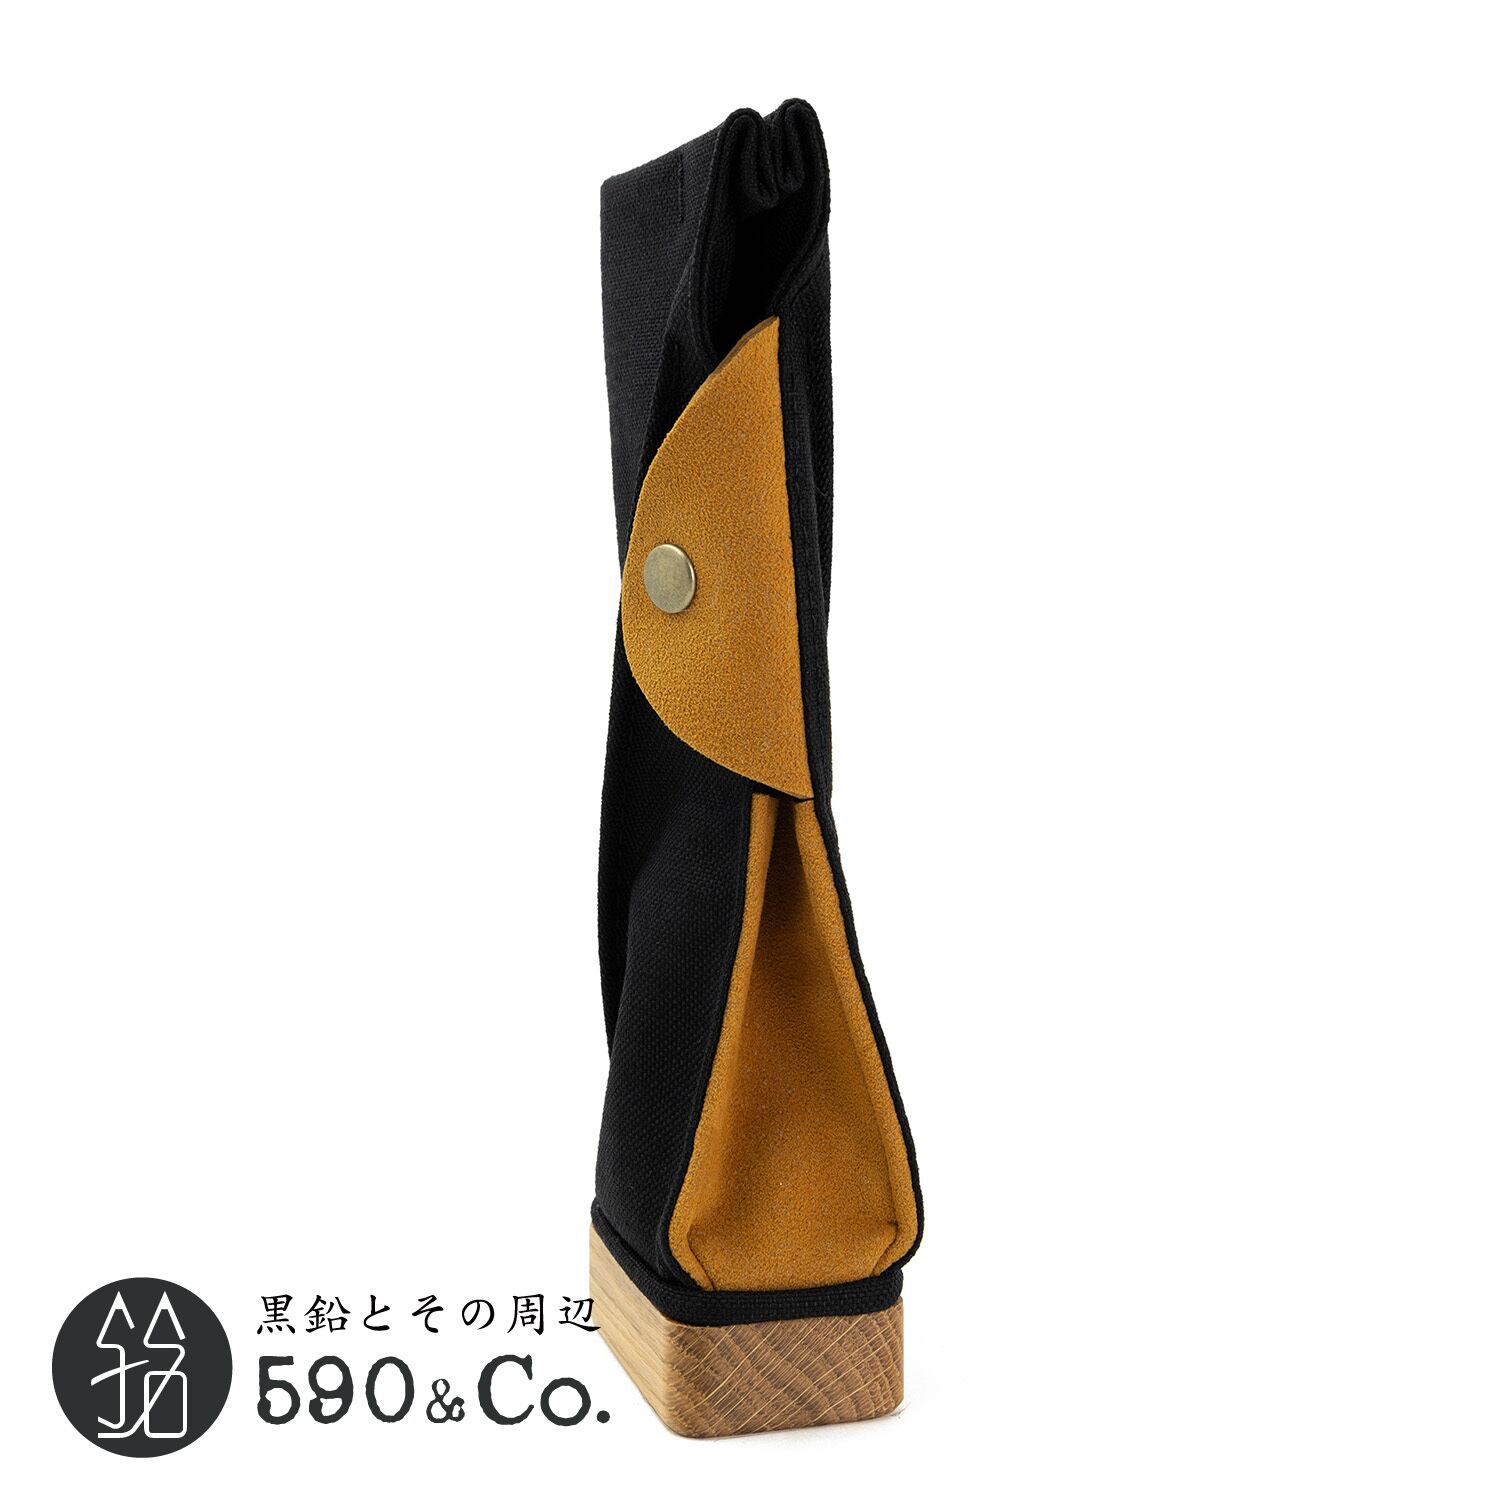 キナリ木工所】PENSTAND/CASE woodsole (black/ginger) 590Co.